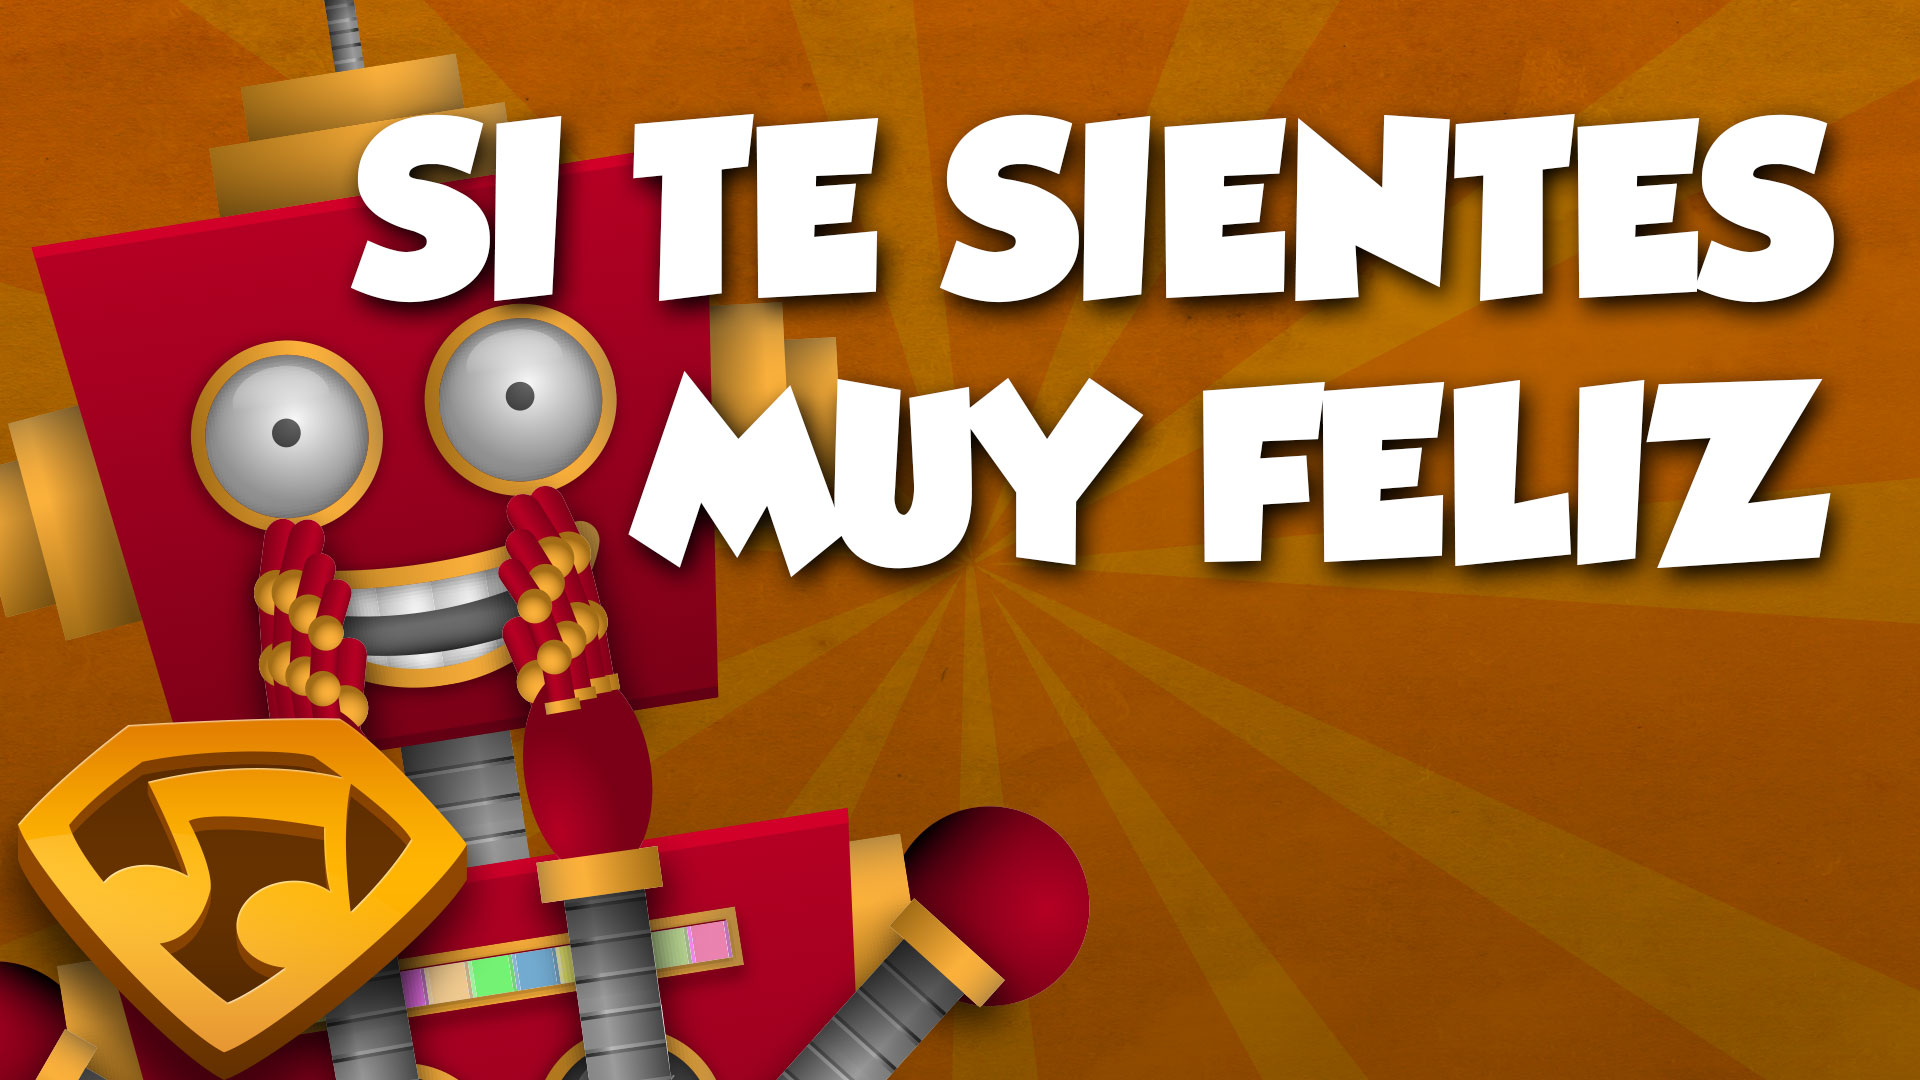 Si Te Sientes Muy Feliz, Aplaude Así (Versión Con Letras) video thumbnail. Click to watch the video.